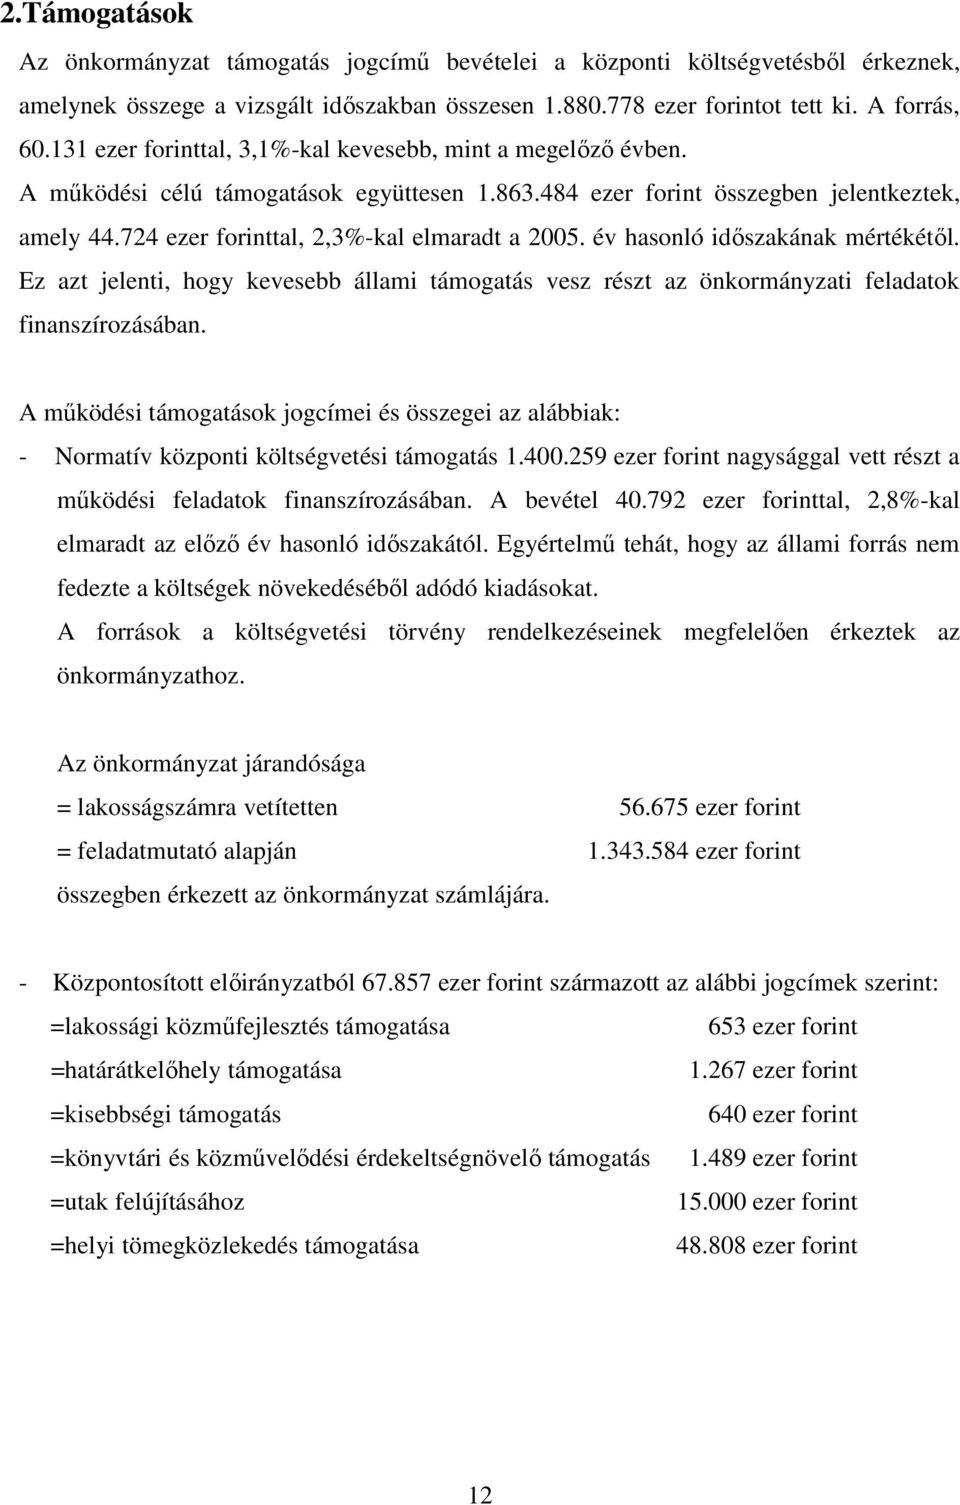 724 ezer forinttal, 2,3%-kal elmaradt a 2005. év hasonló idıszakának mértékétıl. Ez azt jelenti, hogy kevesebb állami támogatás vesz részt az önkormányzati feladatok finanszírozásában.